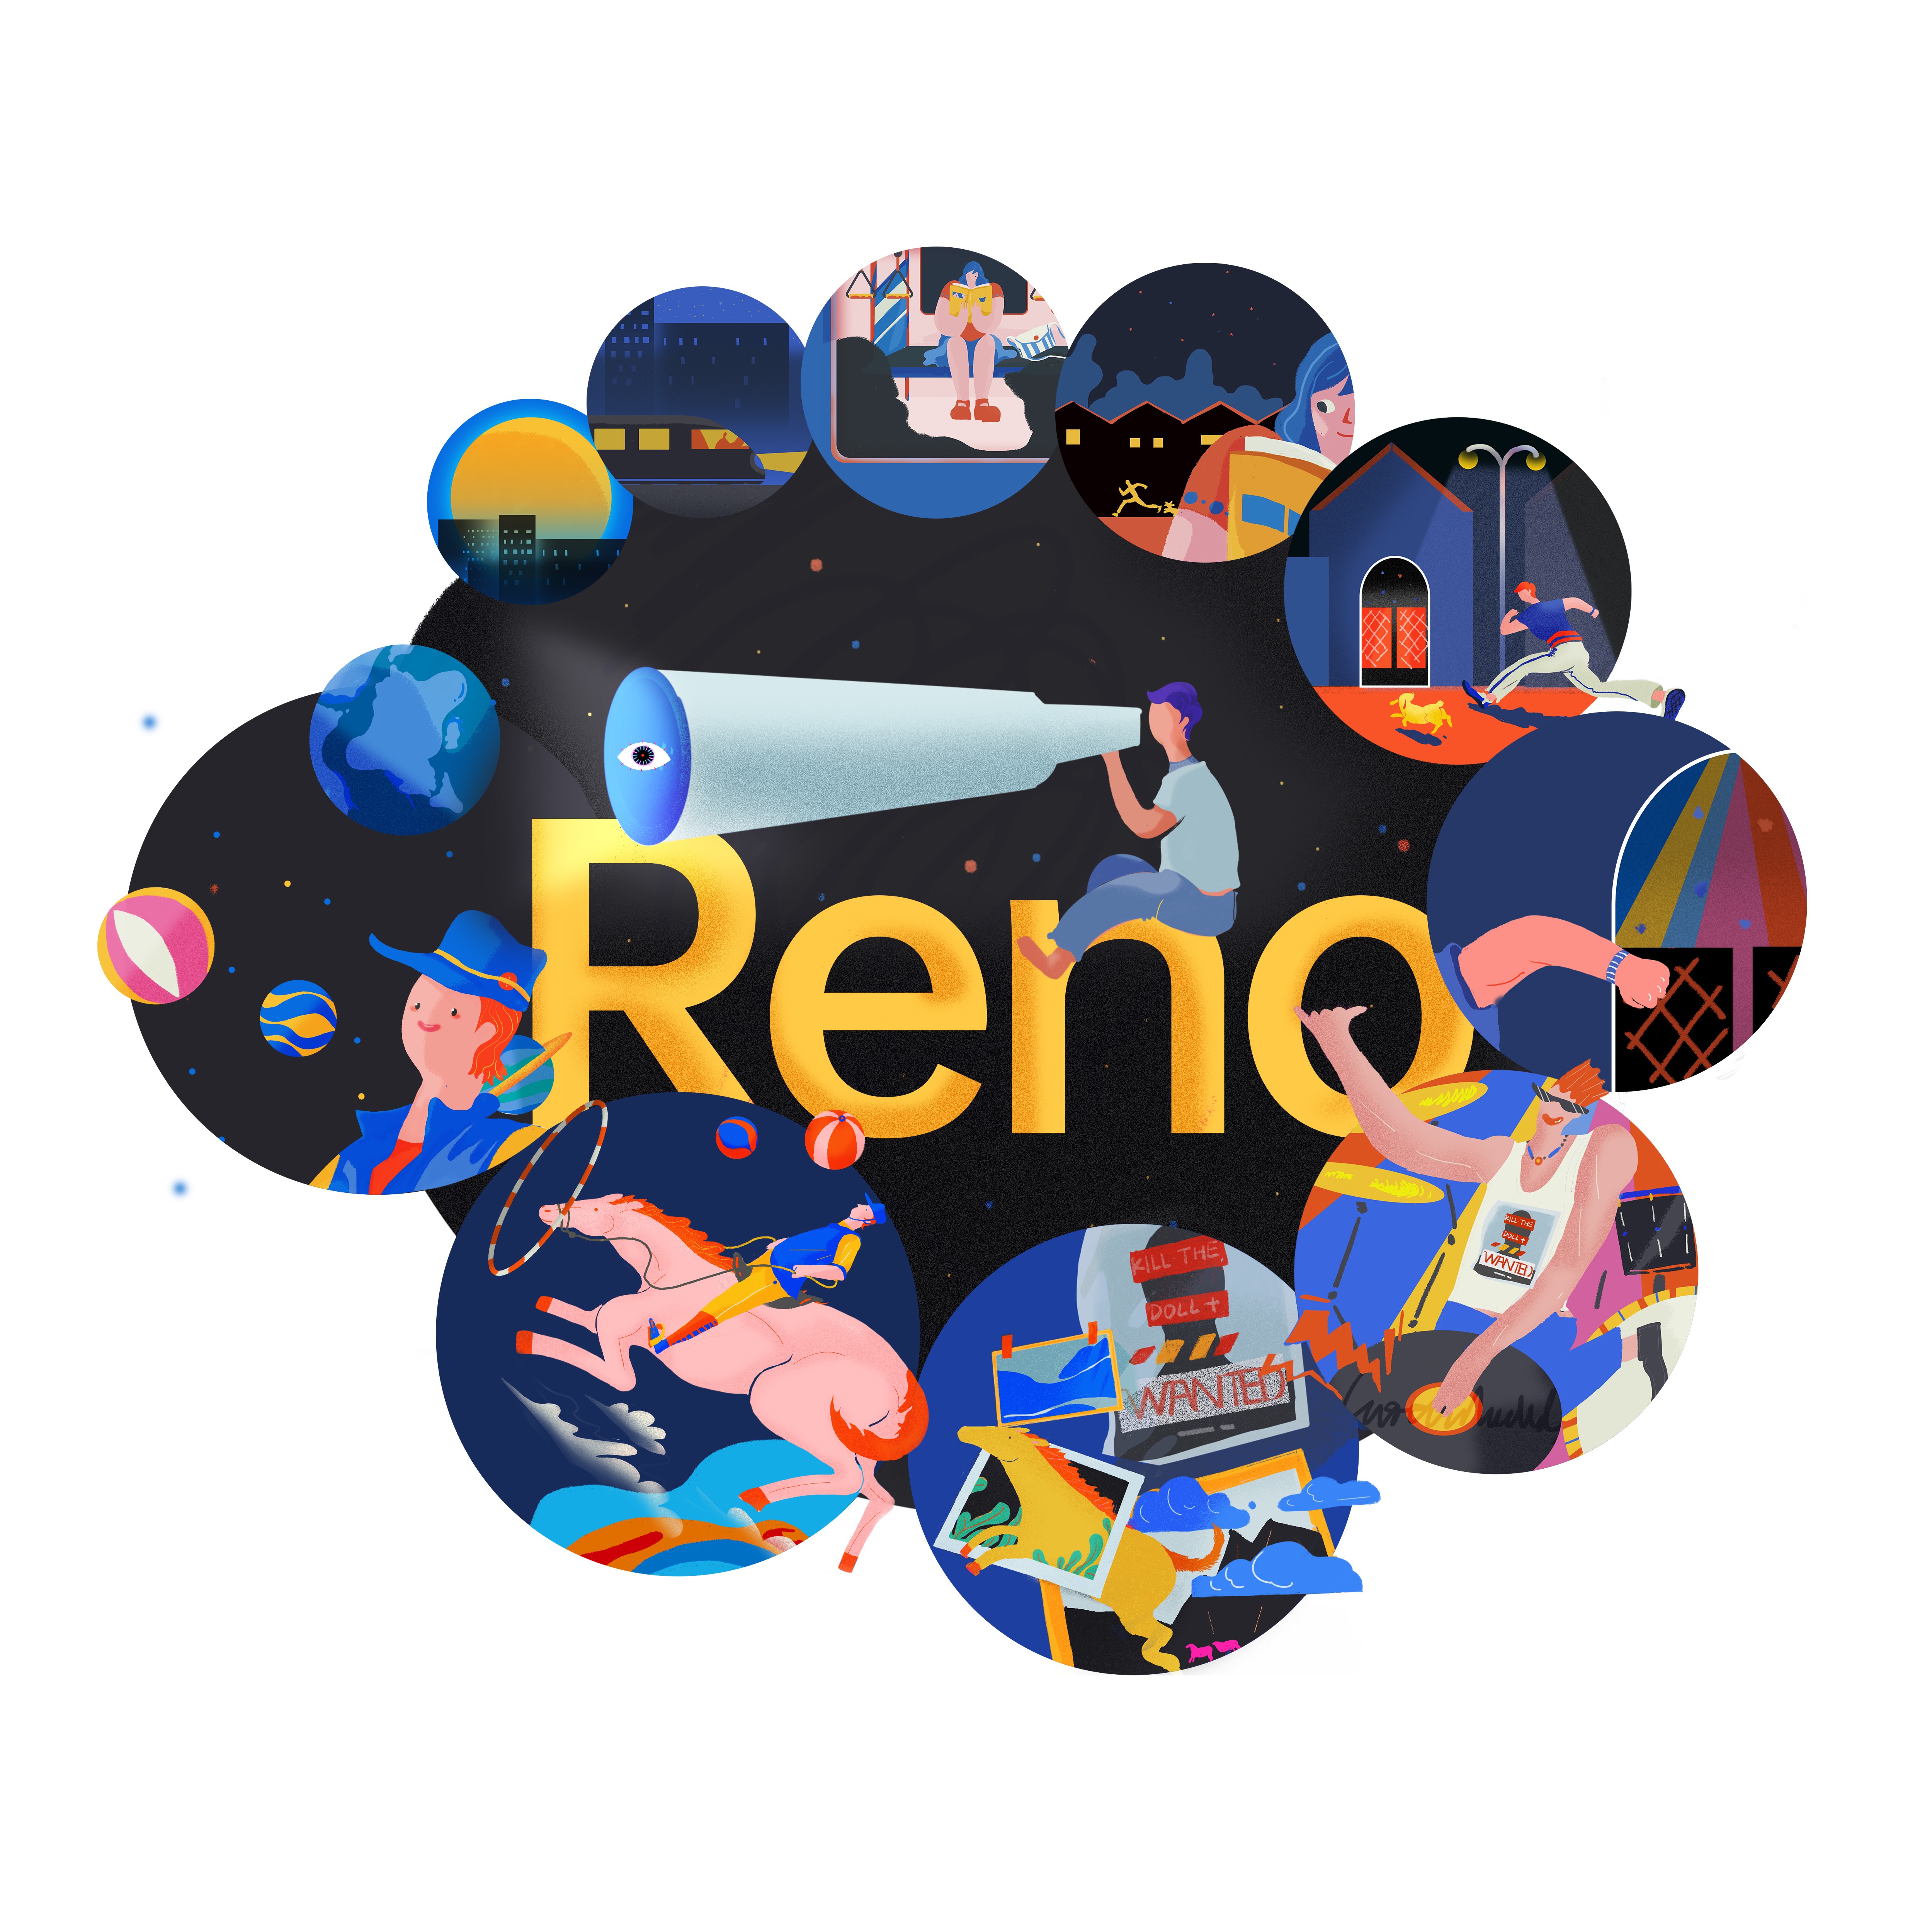 OPPO Reno Announced